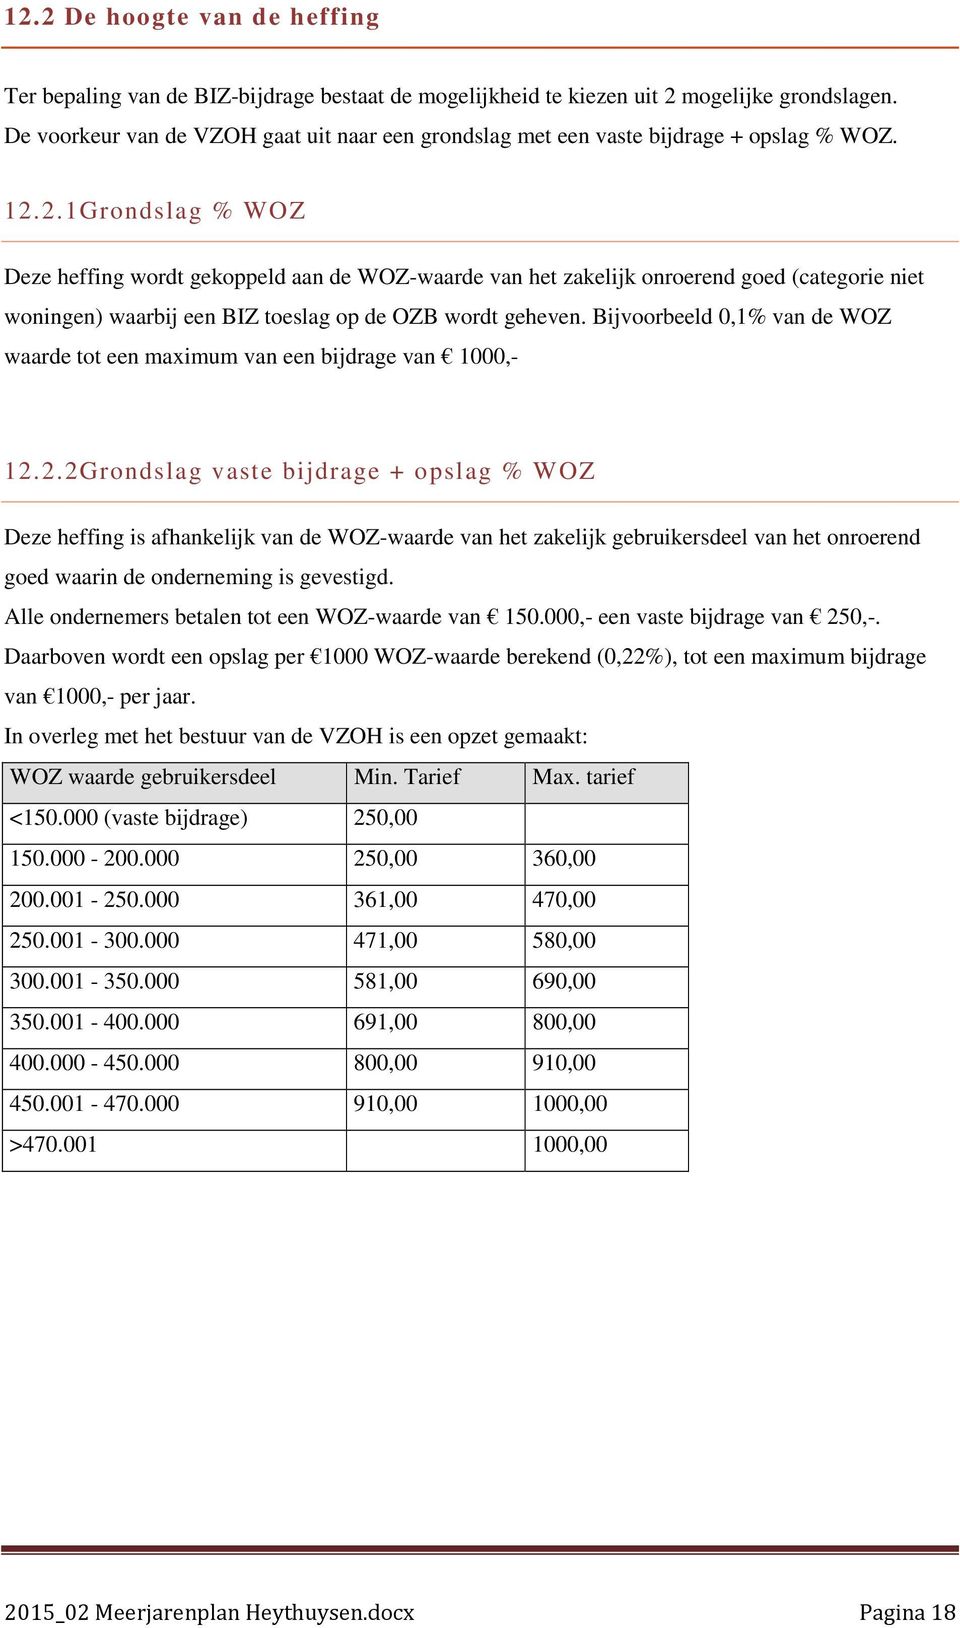 2.1Grondslag % WOZ Deze heffing wordt gekoppeld aan de WOZ-waarde van het zakelijk onroerend goed (categorie niet woningen) waarbij een BIZ toeslag op de OZB wordt geheven.